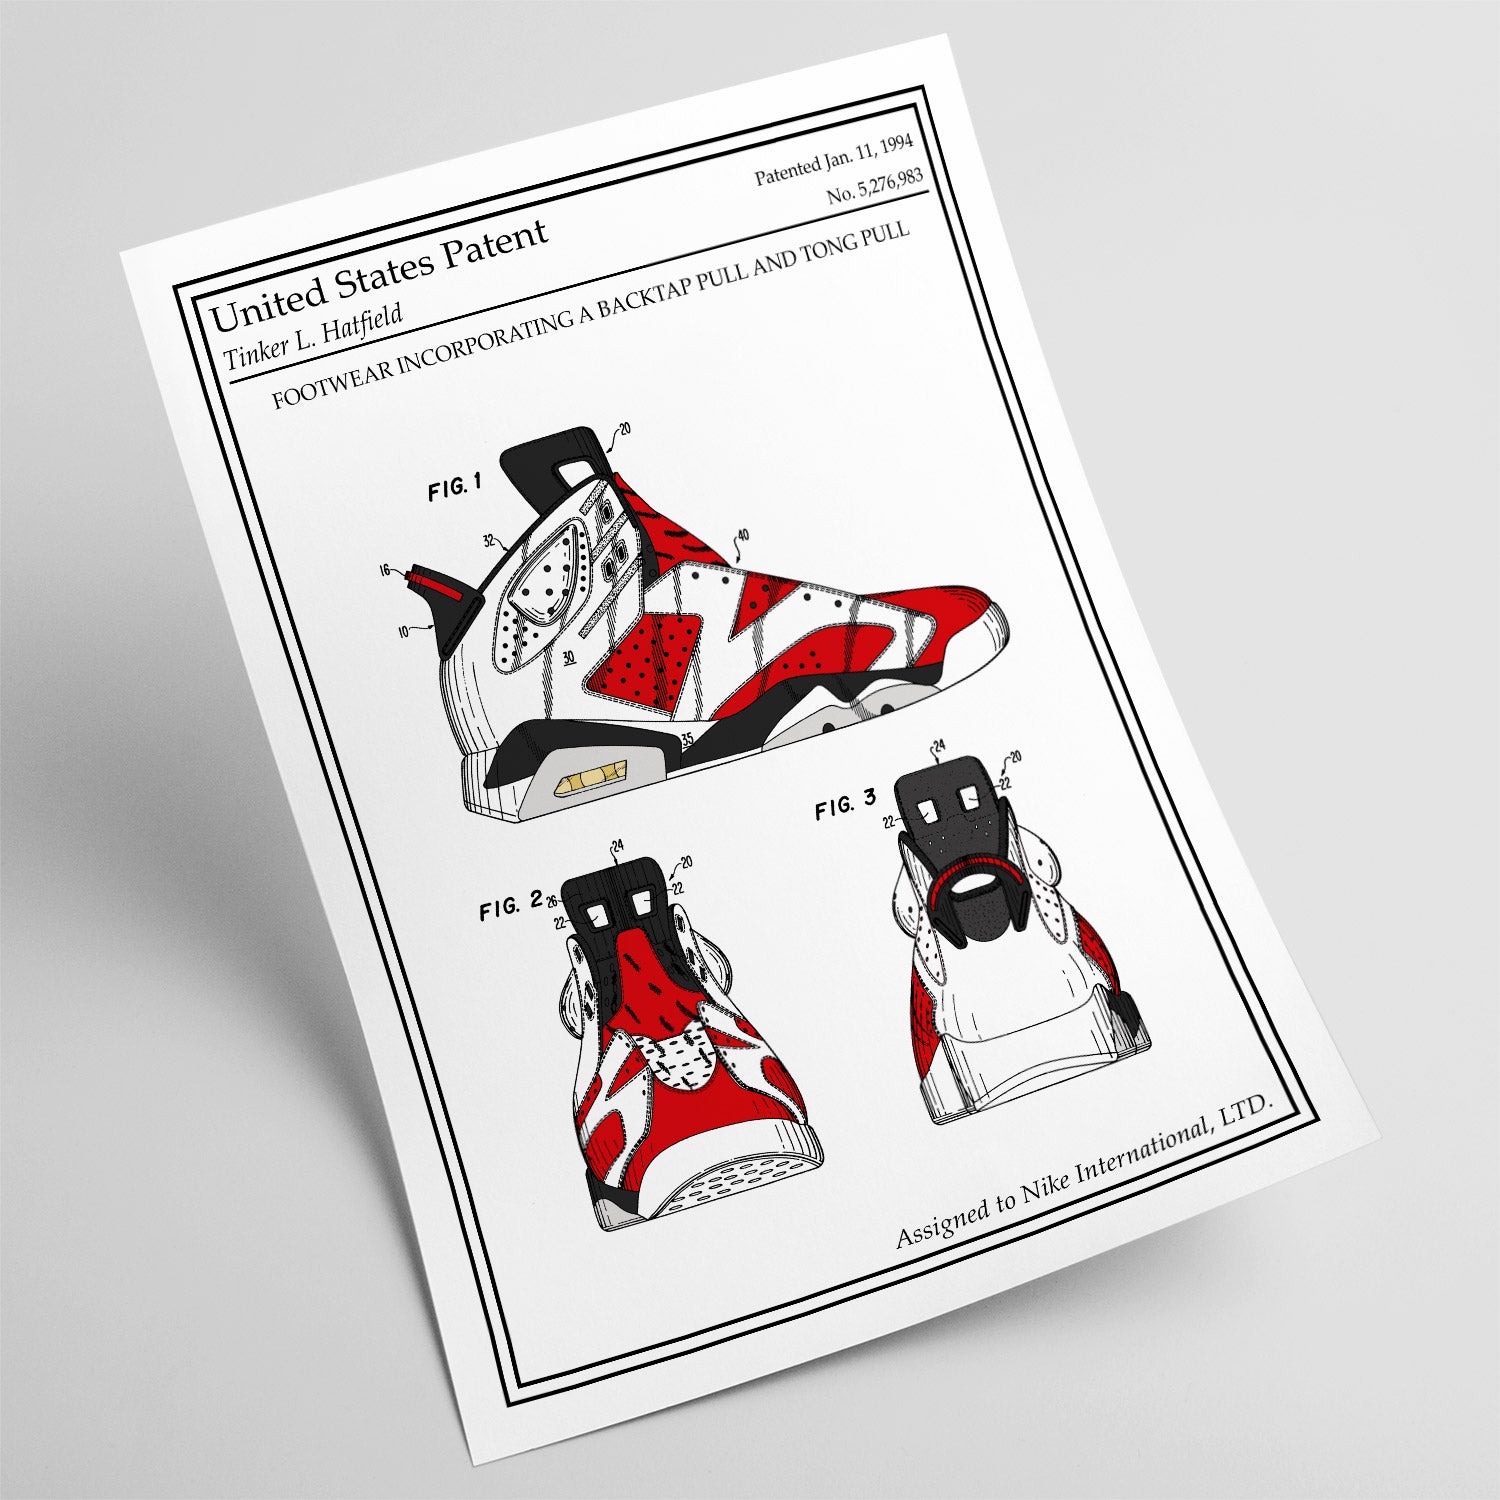 Atelier Malhco  Affiche brevet couleur Nike Air Jordan